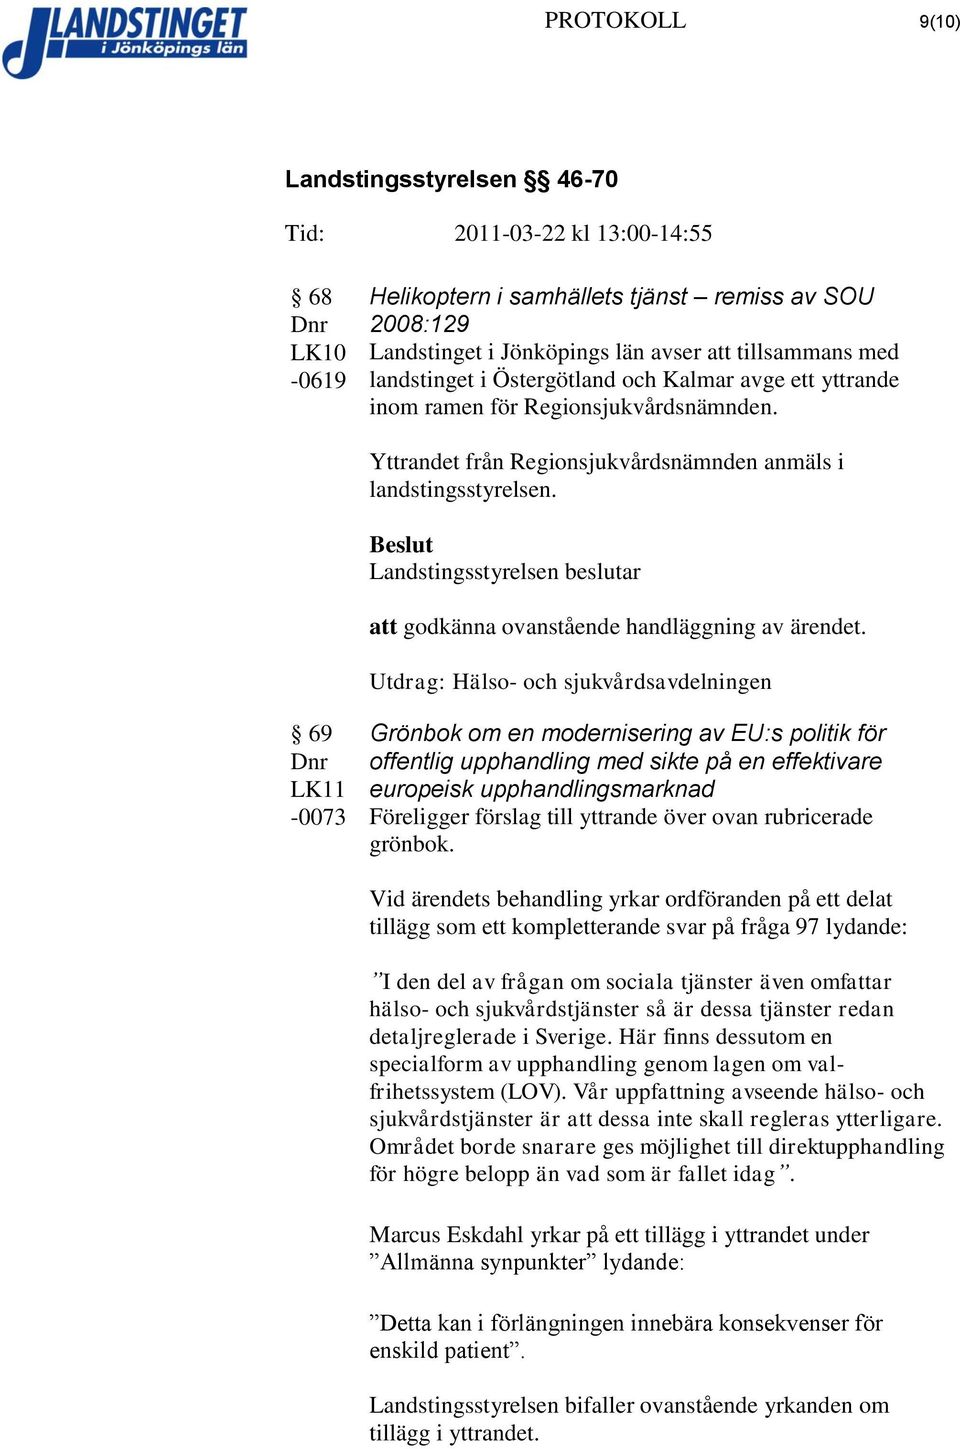 Utdrag: Hälso- och sjukvårdsavdelningen 69-0073 Grönbok om en modernisering av EU:s politik för offentlig upphandling med sikte på en effektivare europeisk upphandlingsmarknad Föreligger förslag till